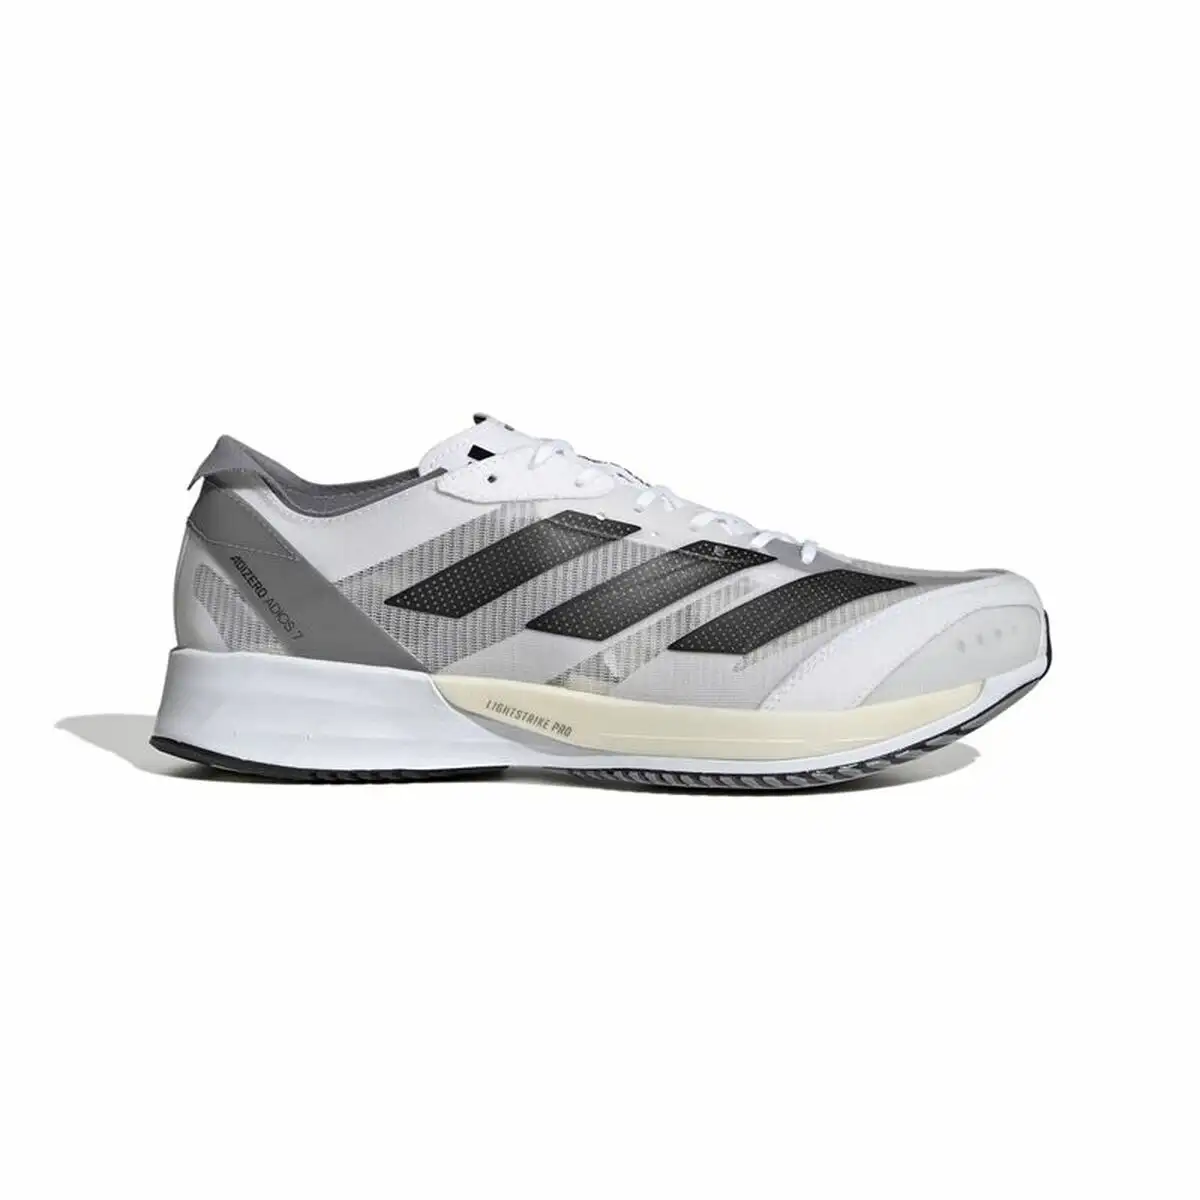 Chaussures de running pour adultes adidas adizero adios 7 homme gris fonce_3221. Bienvenue chez DIAYTAR SENEGAL - Où Chaque Détail Fait la Différence. Découvrez notre sélection méticuleuse et choisissez des articles qui répondent à vos exigences.